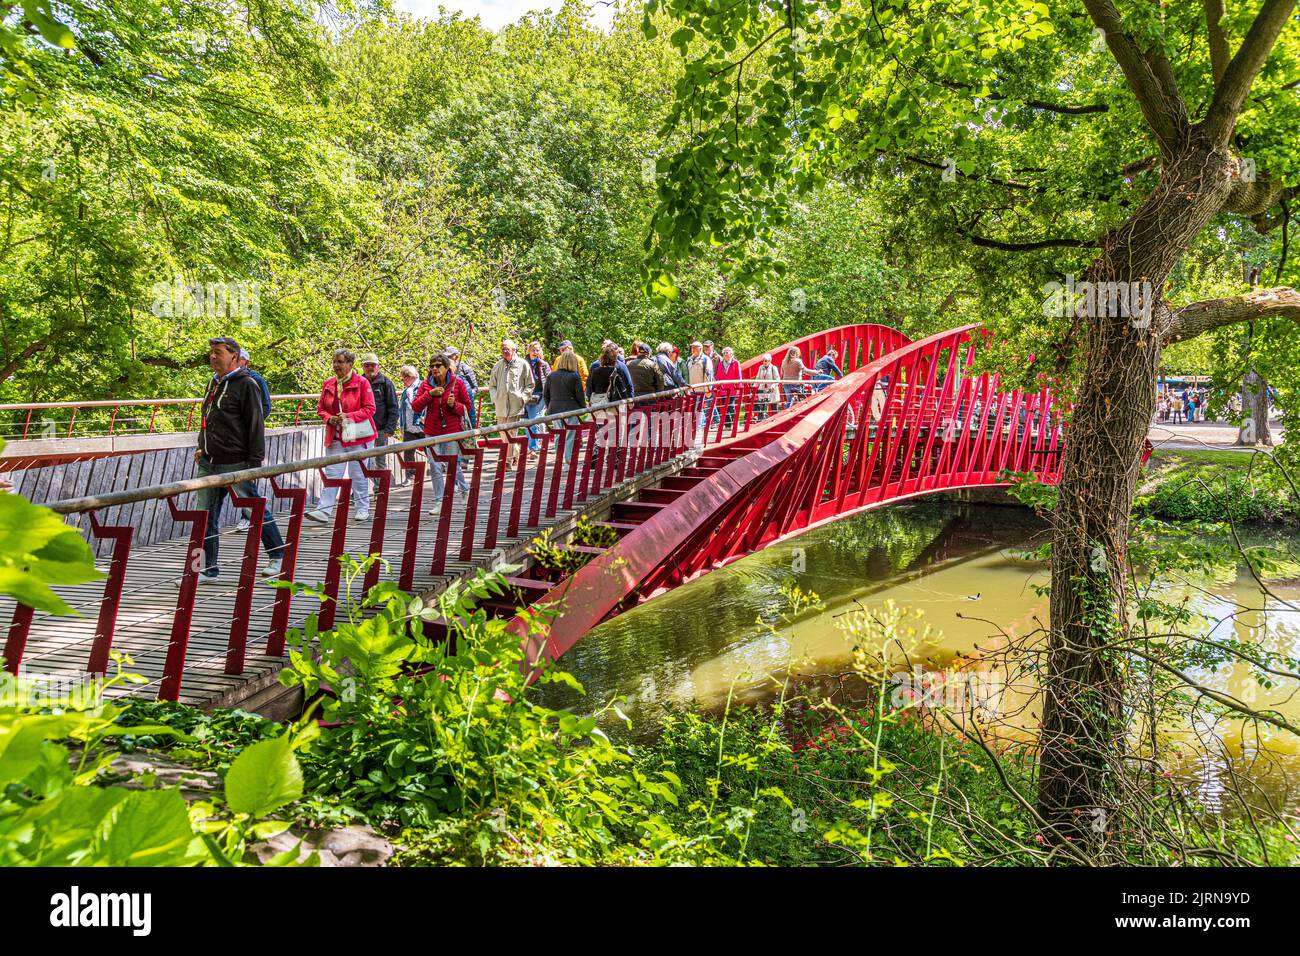 Turistas que cruzan el puente Barge (Bargebrug) que conecta el parque Minnewater con las afueras de la ciudad de Brujas, Bélgica Foto de stock